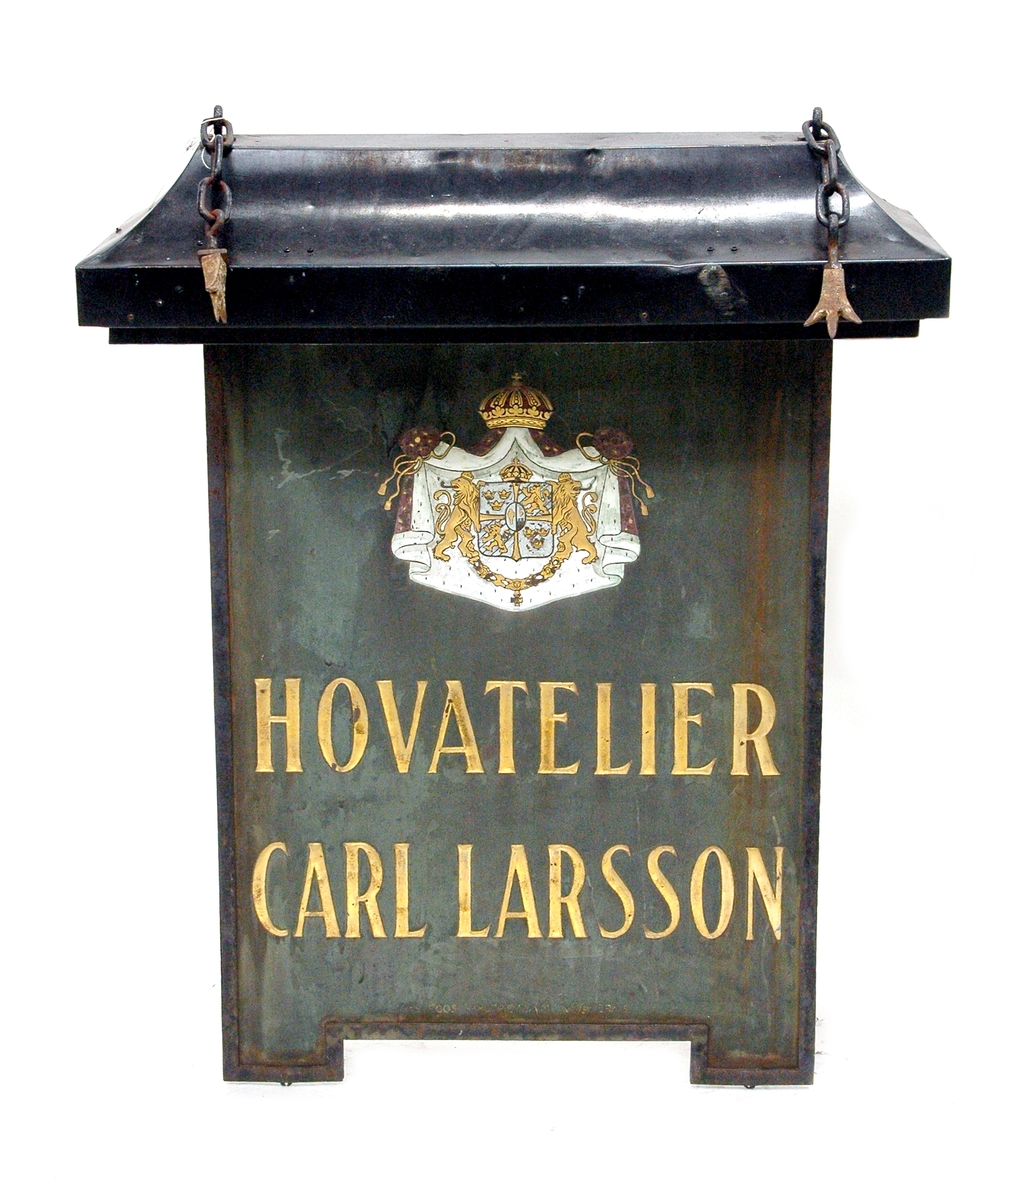 Skylt med väggfäste som har hängt utanför porten på Nygatan 34 i Gävle där firma hovfotograf Carl Larsson hade ateljé 1893-2003.

På den dubbelsidiga skylten finns riksvapnet och texten "HOVATELIER CARL LARSSON".